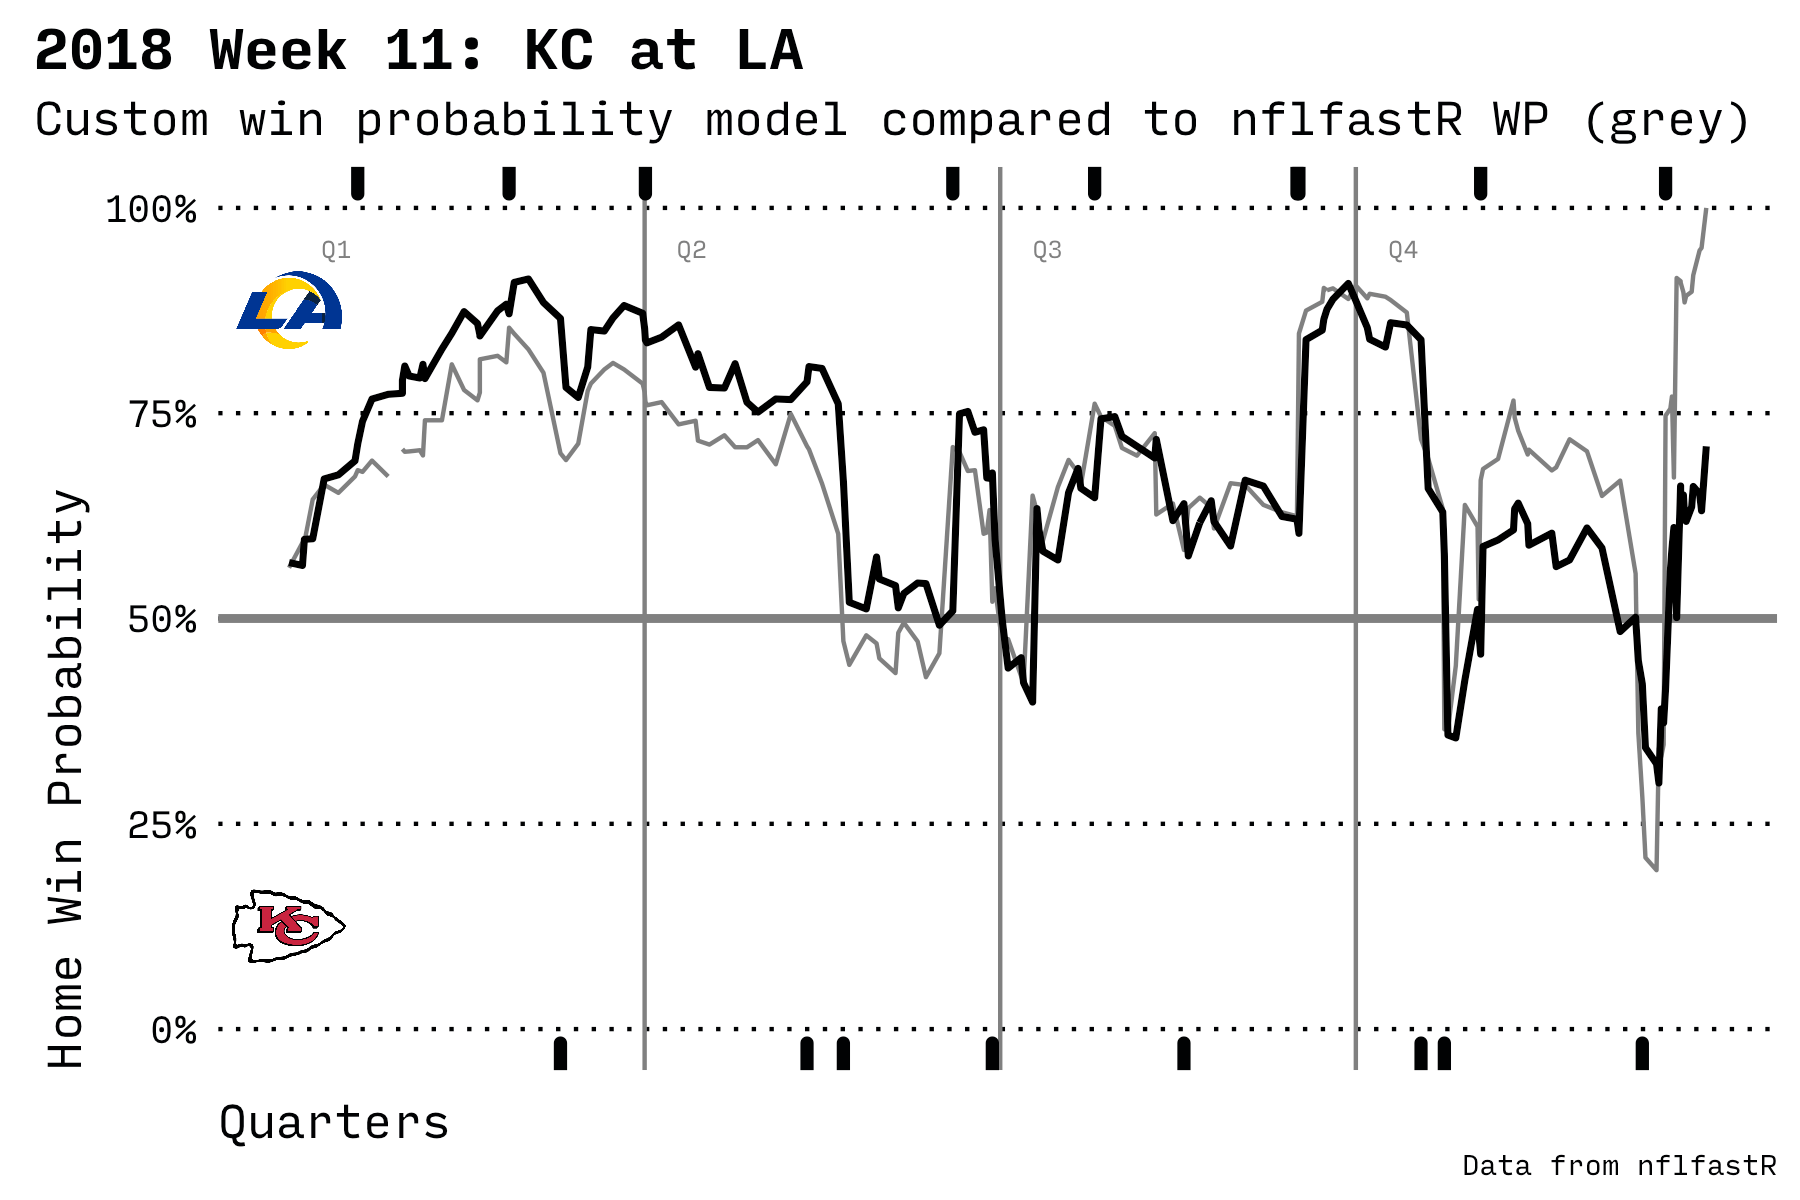 KC vs LA in 2018